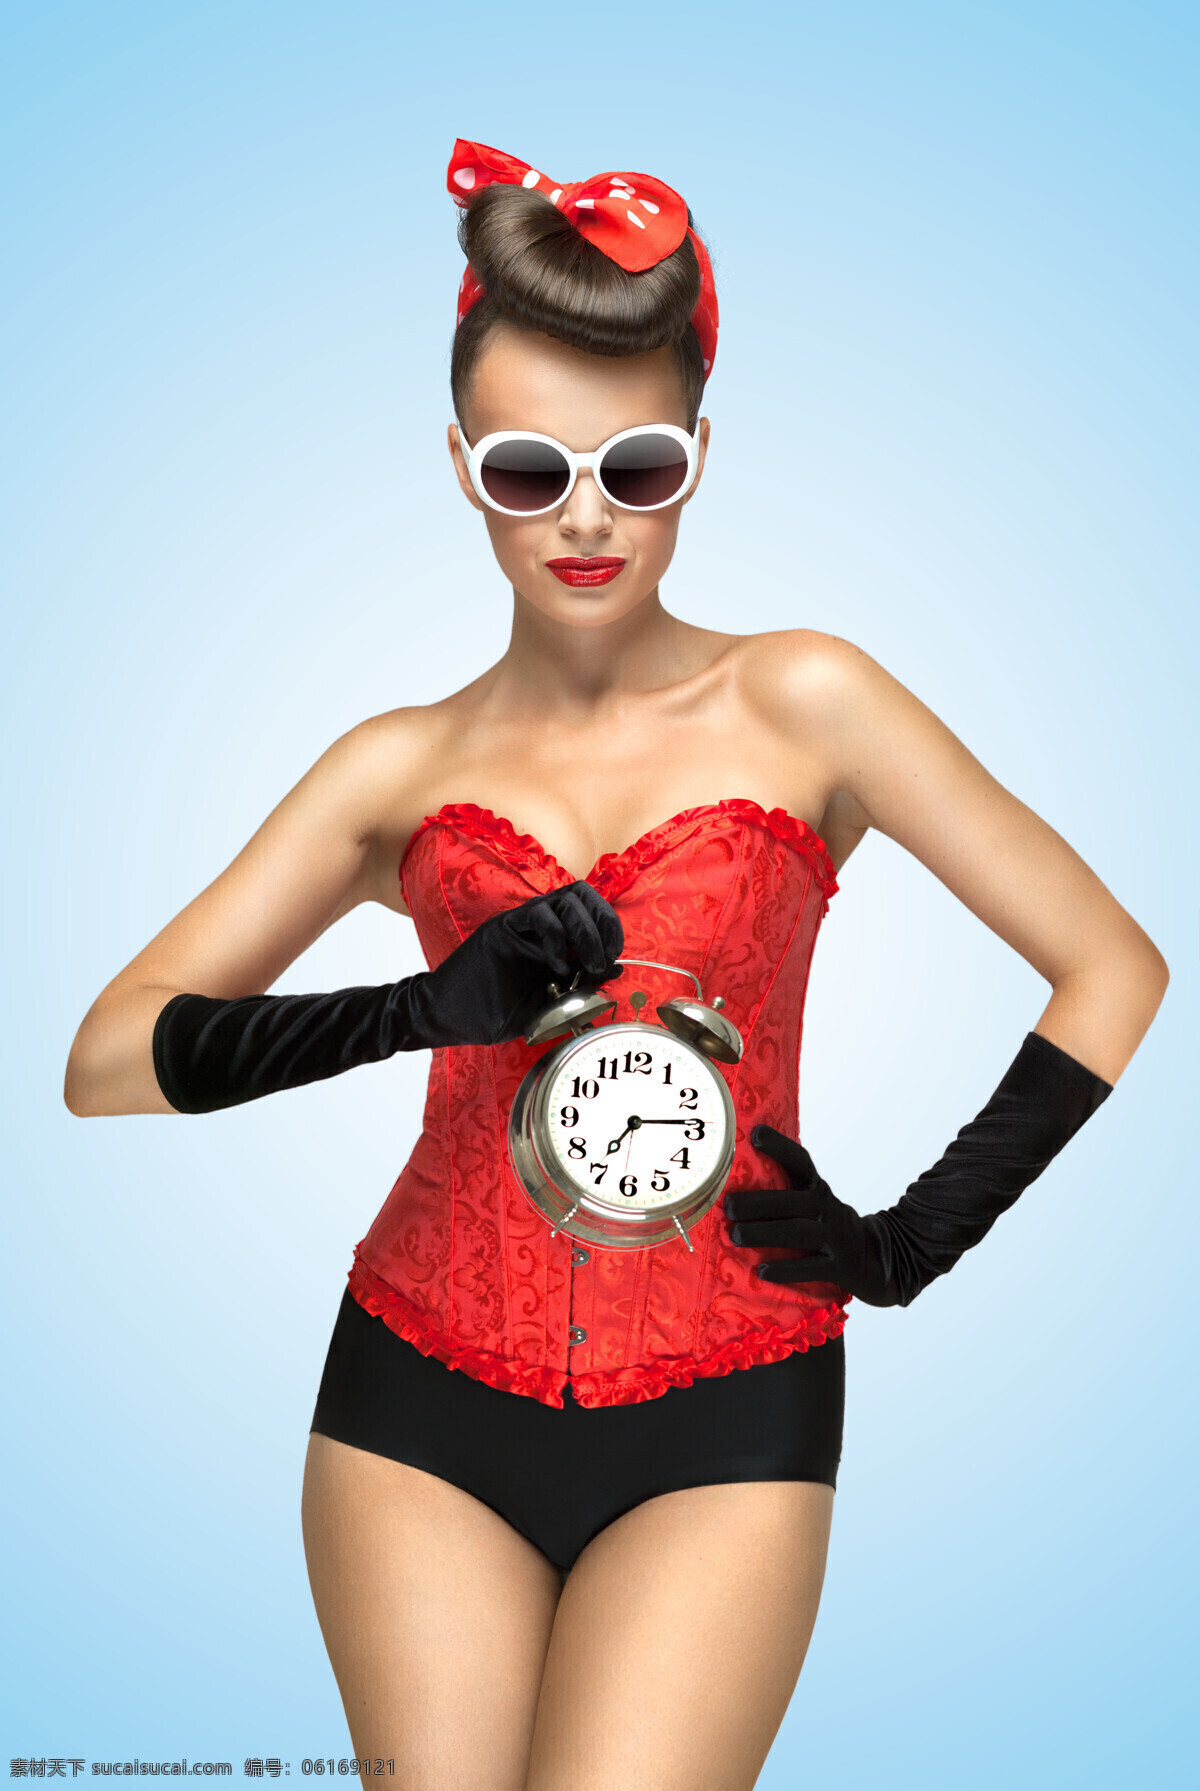 手 钟表 女人 外国女人 时间 墨镜 拿着 黑色手套 红色性感内衣 美女图片 人物图片